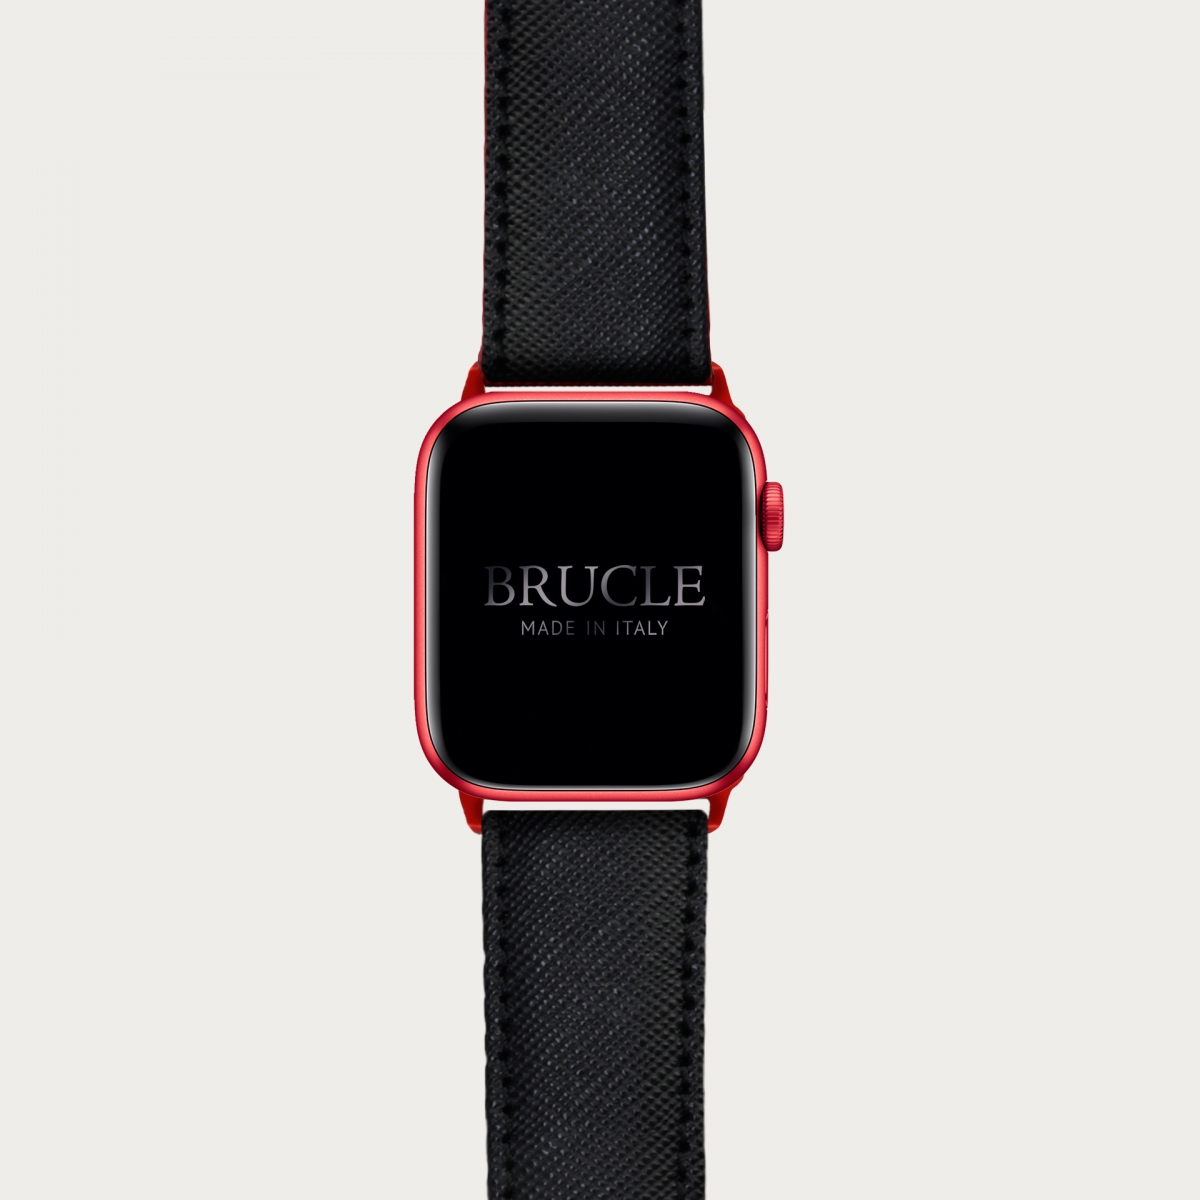 Armband kompatibel mit Apple Watch / Samsung Smartwatch, Schwarz, leder mit Saffiano-print